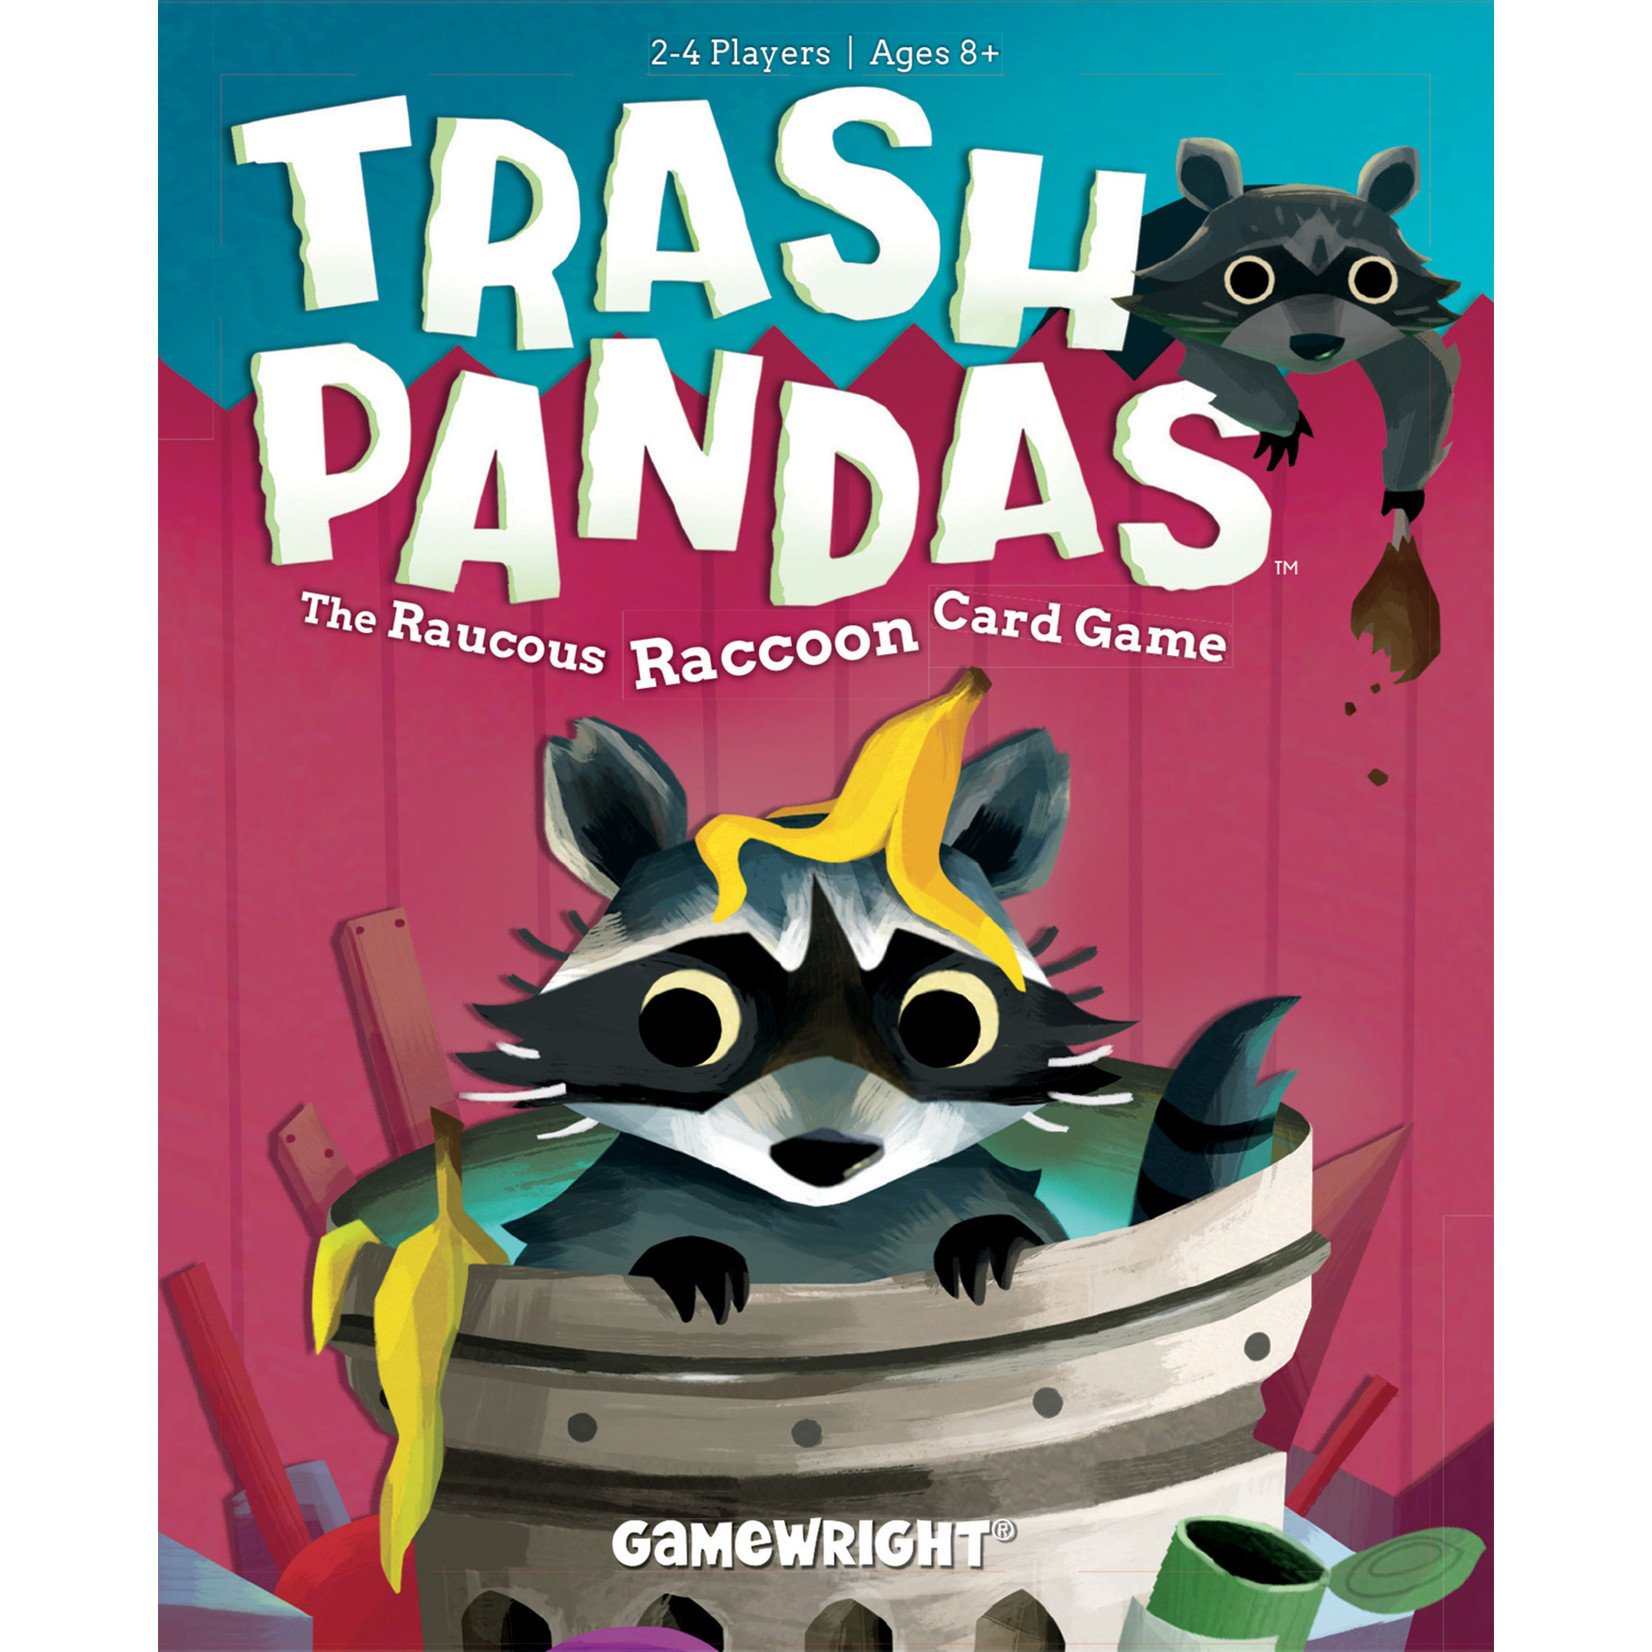 Gamewright Trash Pandas